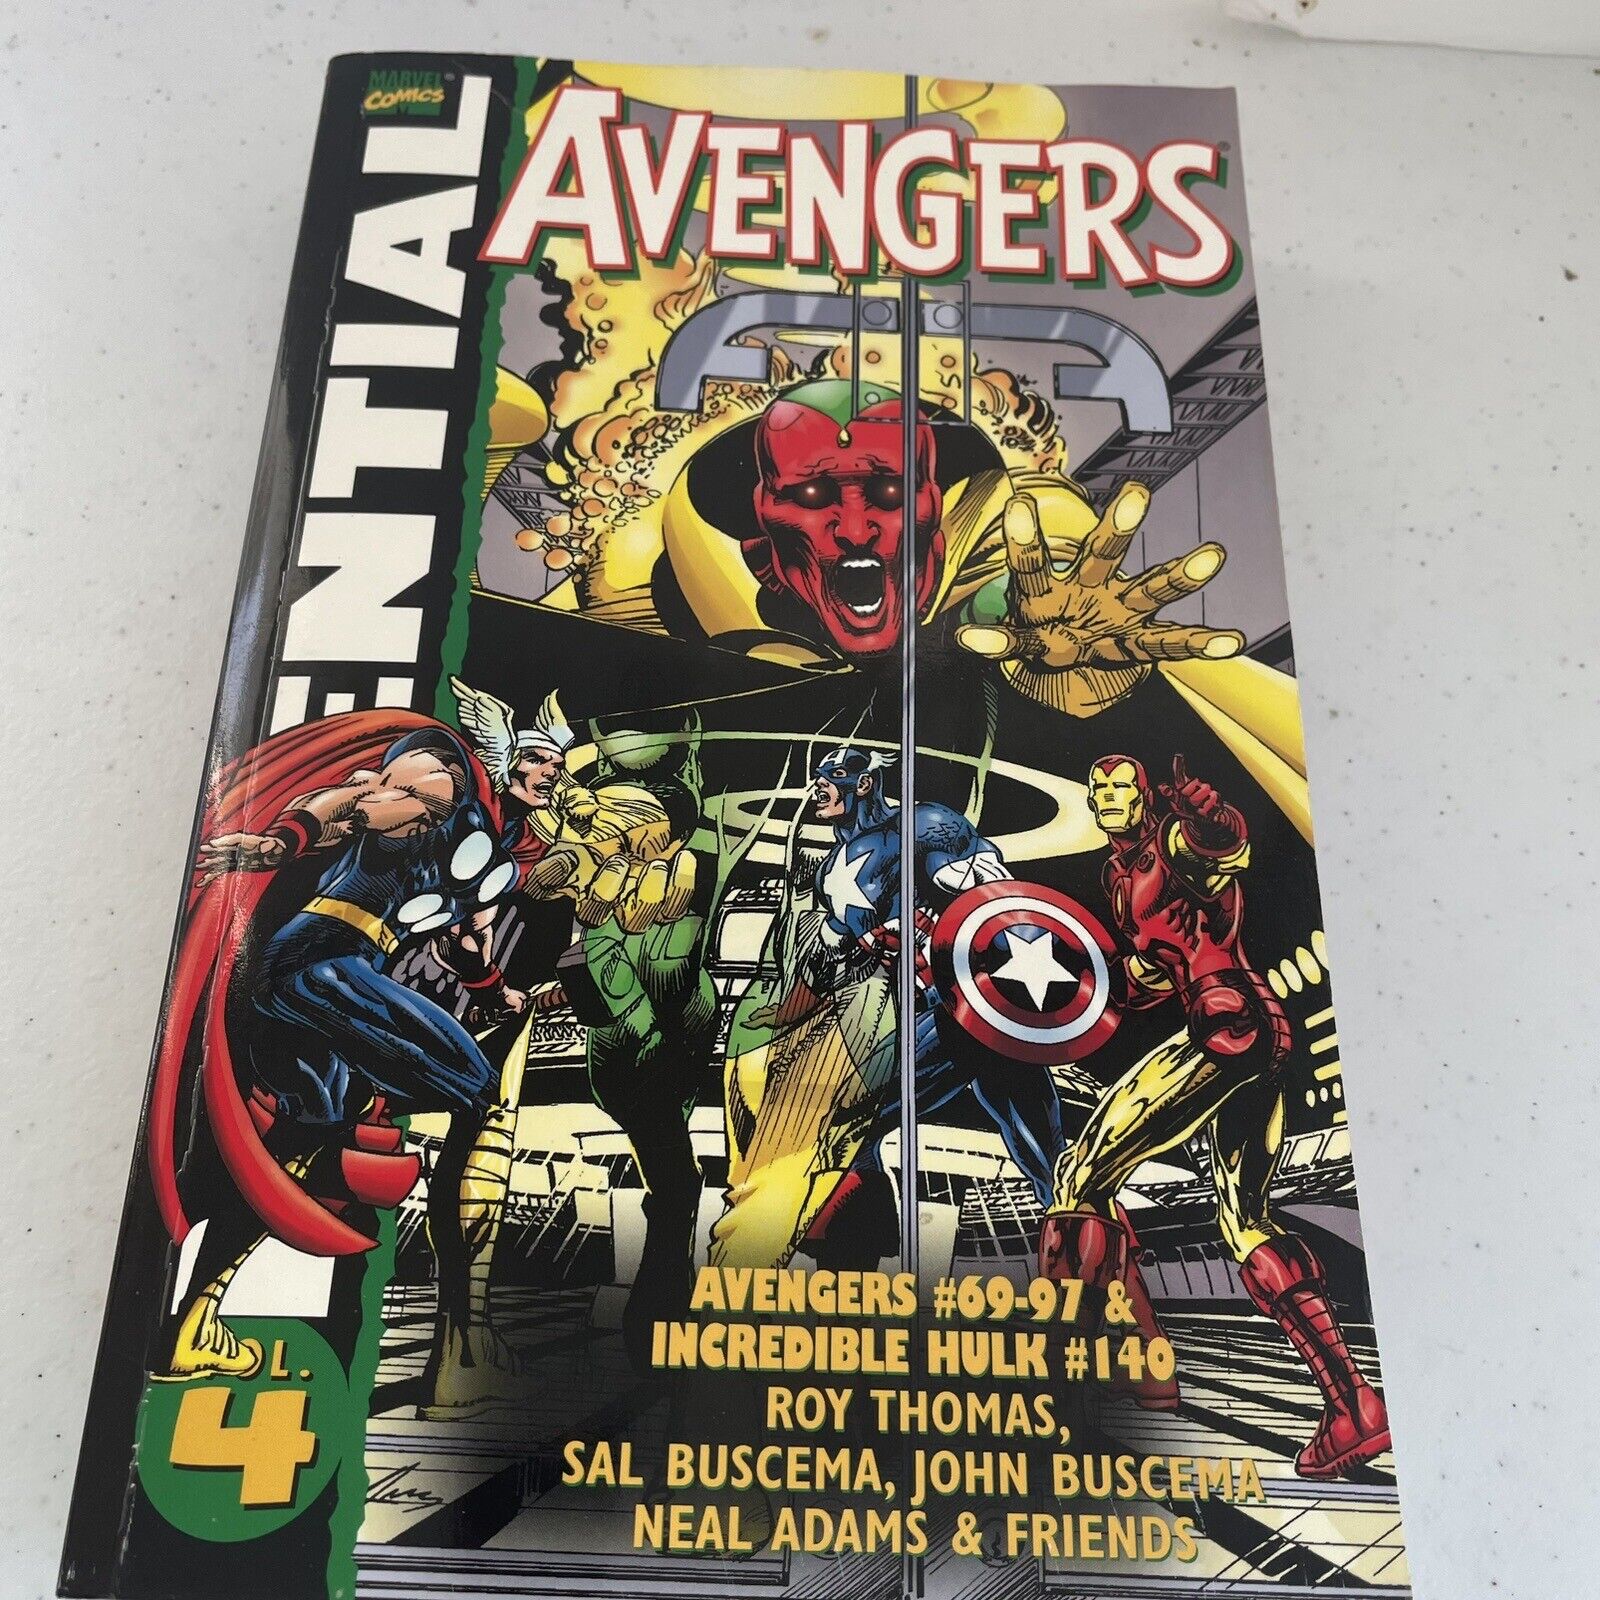 Essential Avengers Vol 4 (Marvel, 2004) Avenger 69-97, Hulk 140 Paperback Comics